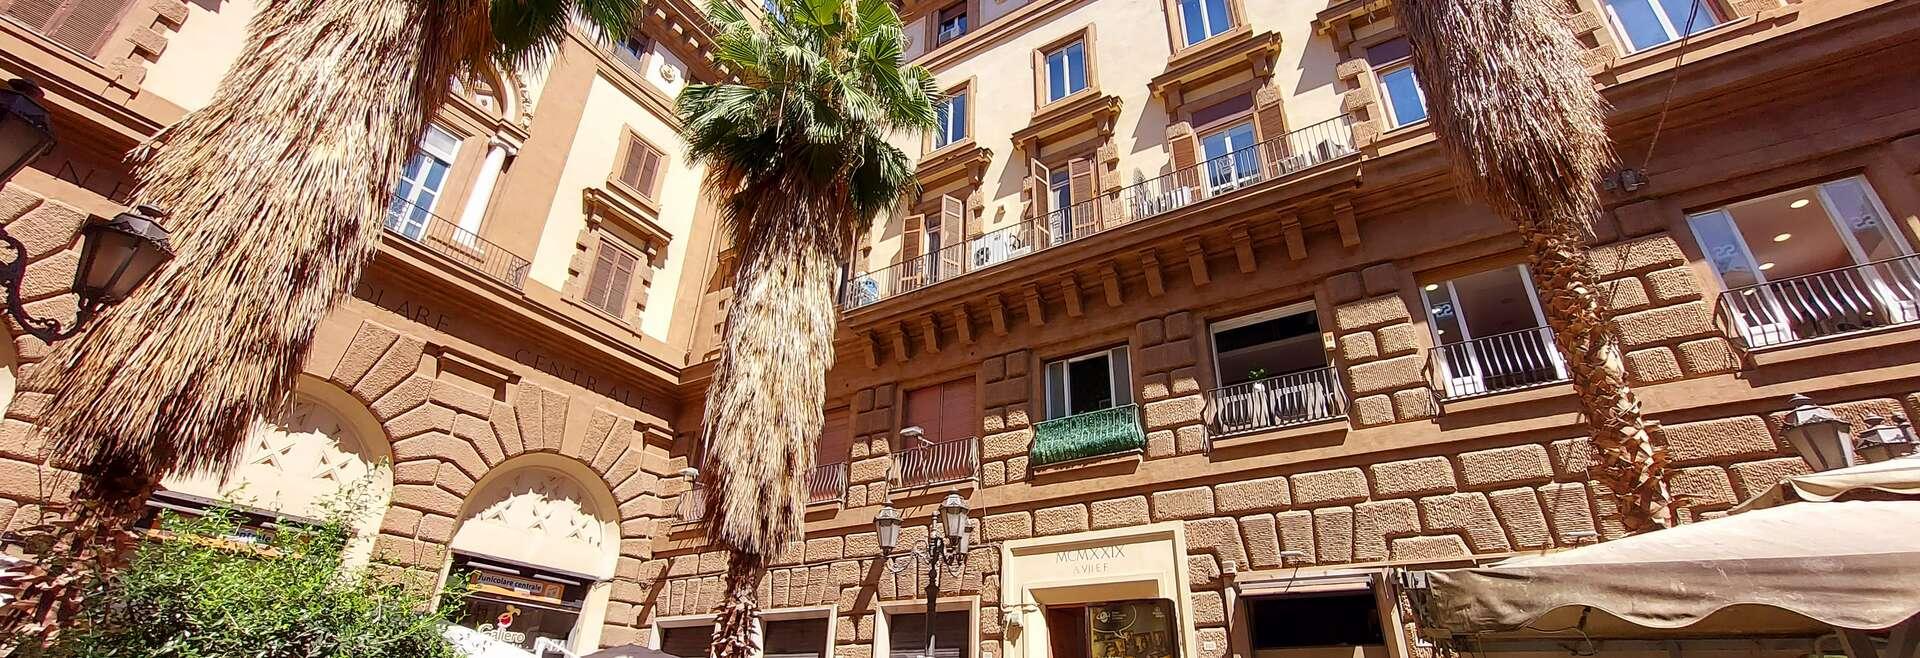 Sprachaufenthalt Italien, Neapel, Accademia Italiana Napoli - Gebäude